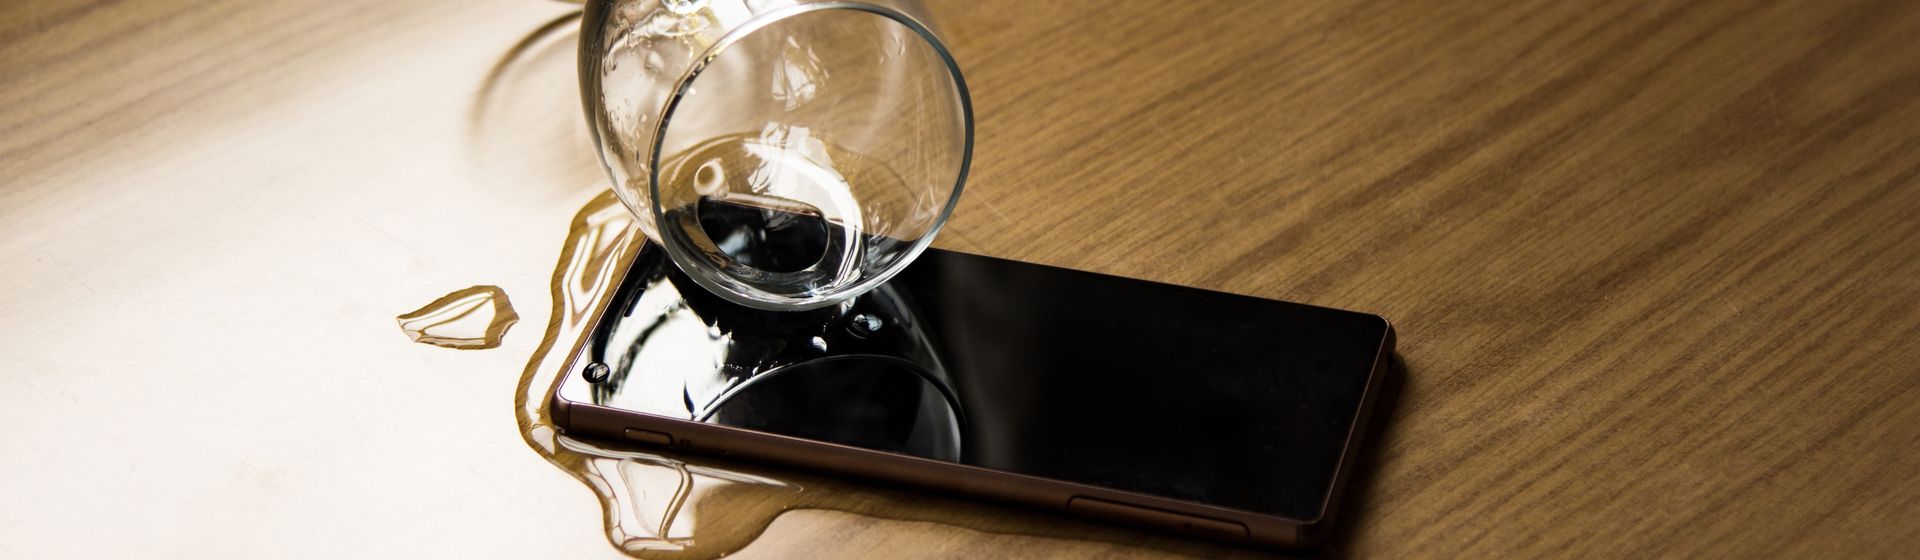 Copo de vidro entornando água em um celular em cima de uma mesa de madeira